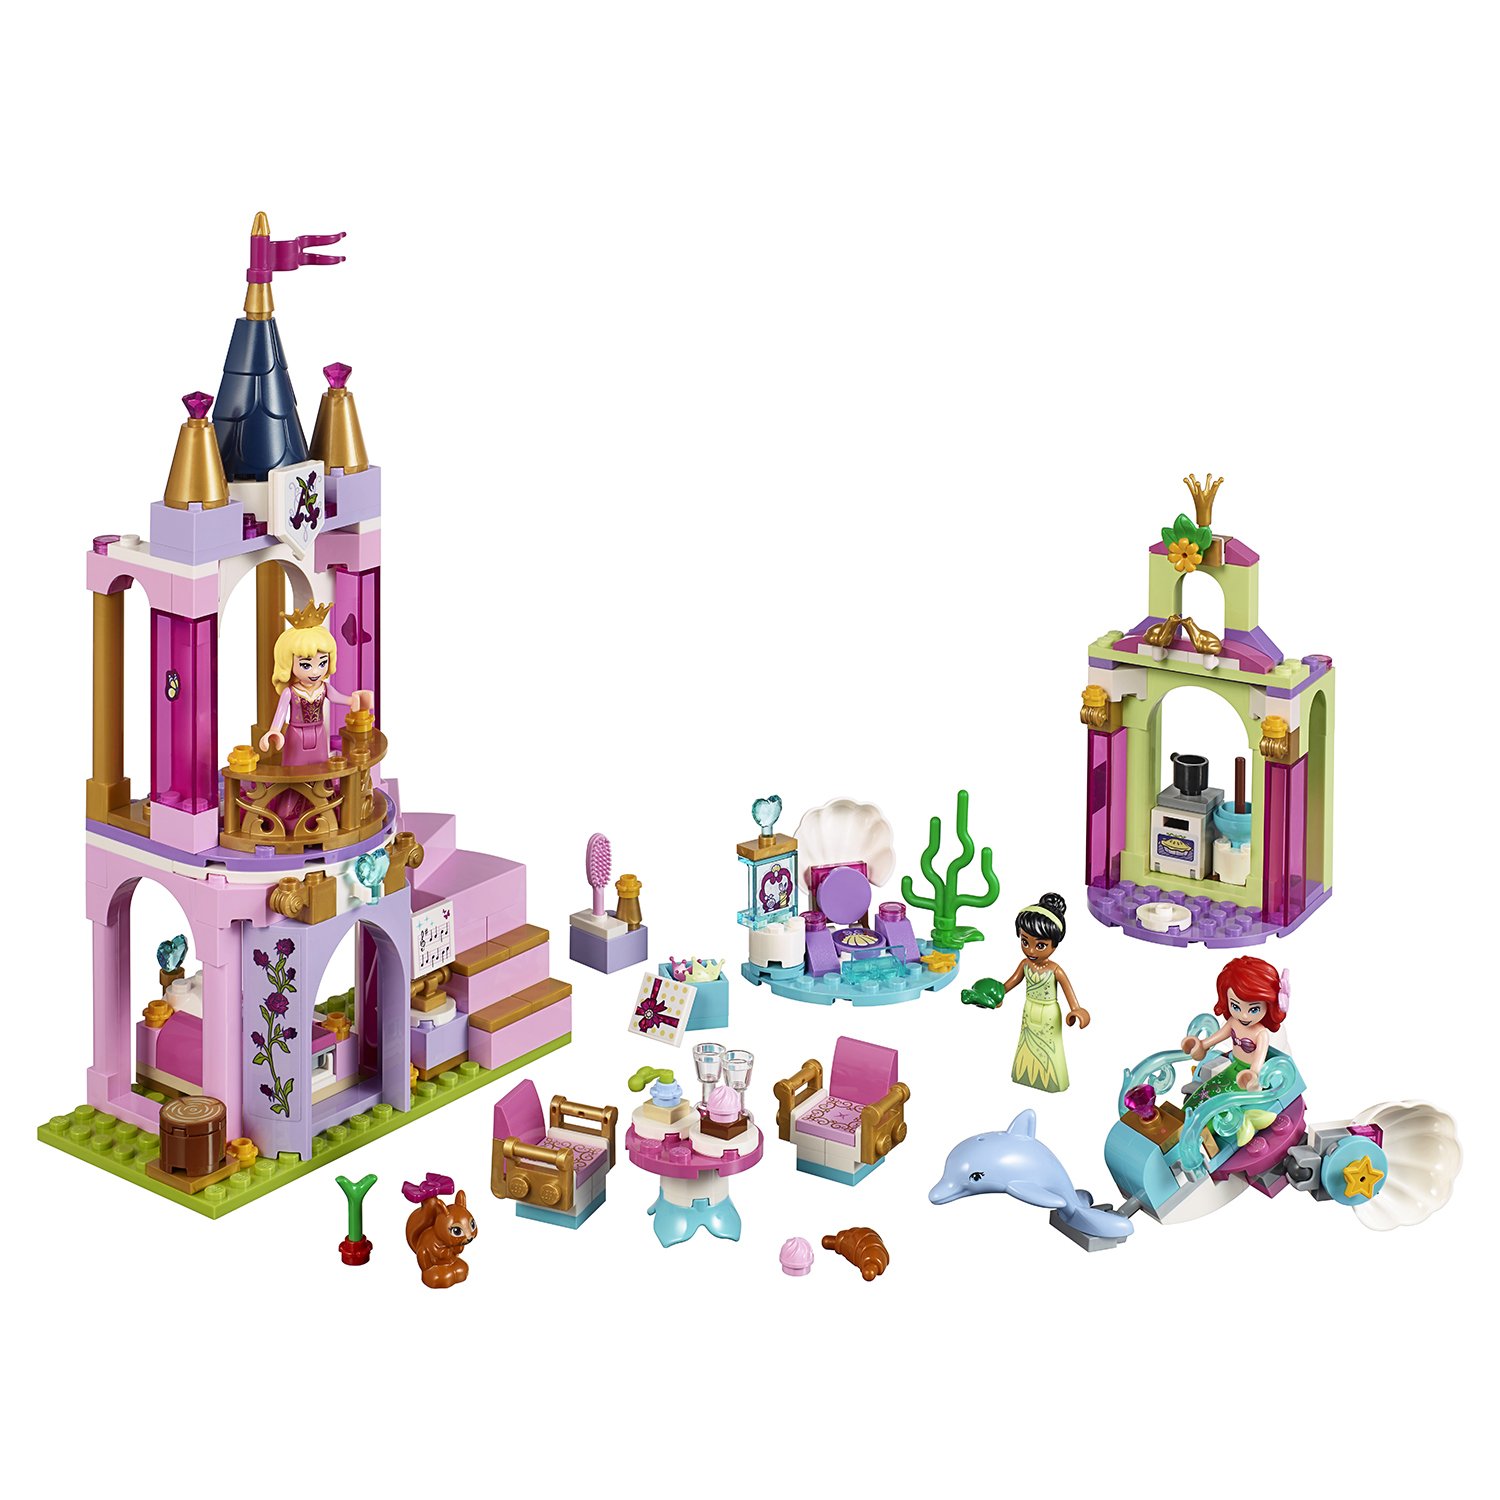 Конструктор LEGO Disney Princess 41162 Королевский праздник Ариэль, Авроры и Тианы